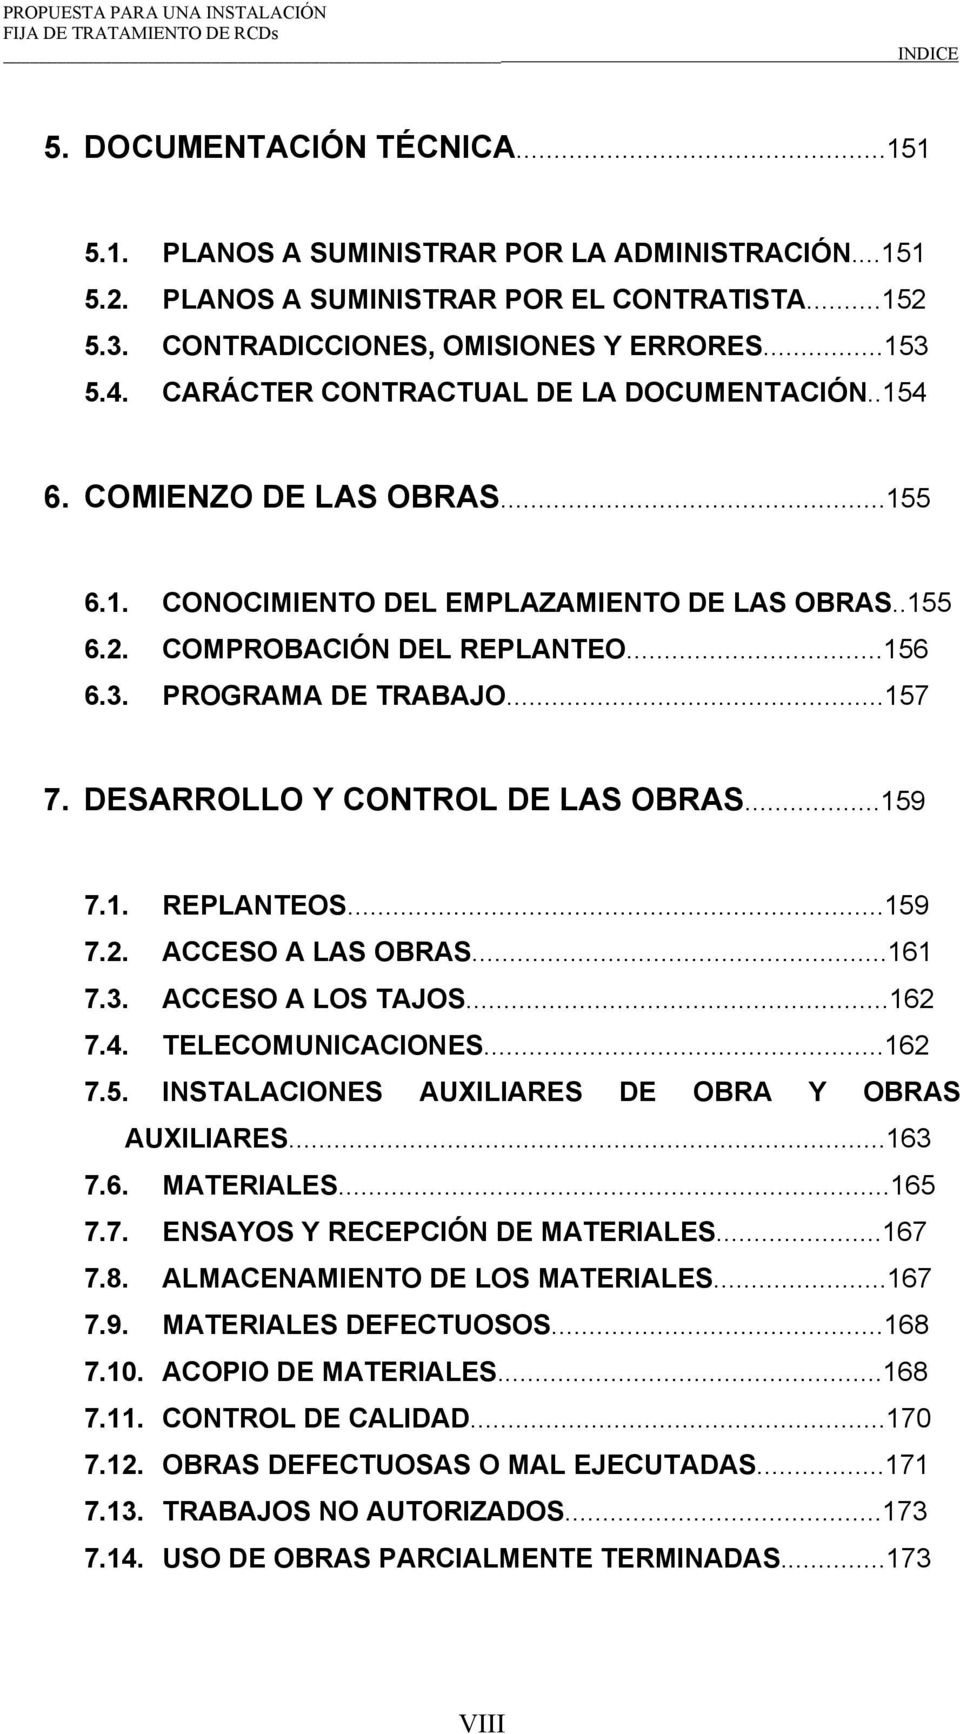 DESARROLLO Y CONTROL DE LAS OBRAS...159 7.1. REPLANTEOS...159 7.2. ACCESO A LAS OBRAS...161 7.3. ACCESO A LOS TAJOS...162 7.4. TELECOMUNICACIONES...162 7.5. INSTALACIONES AUXILIARES DE OBRA Y OBRAS AUXILIARES.